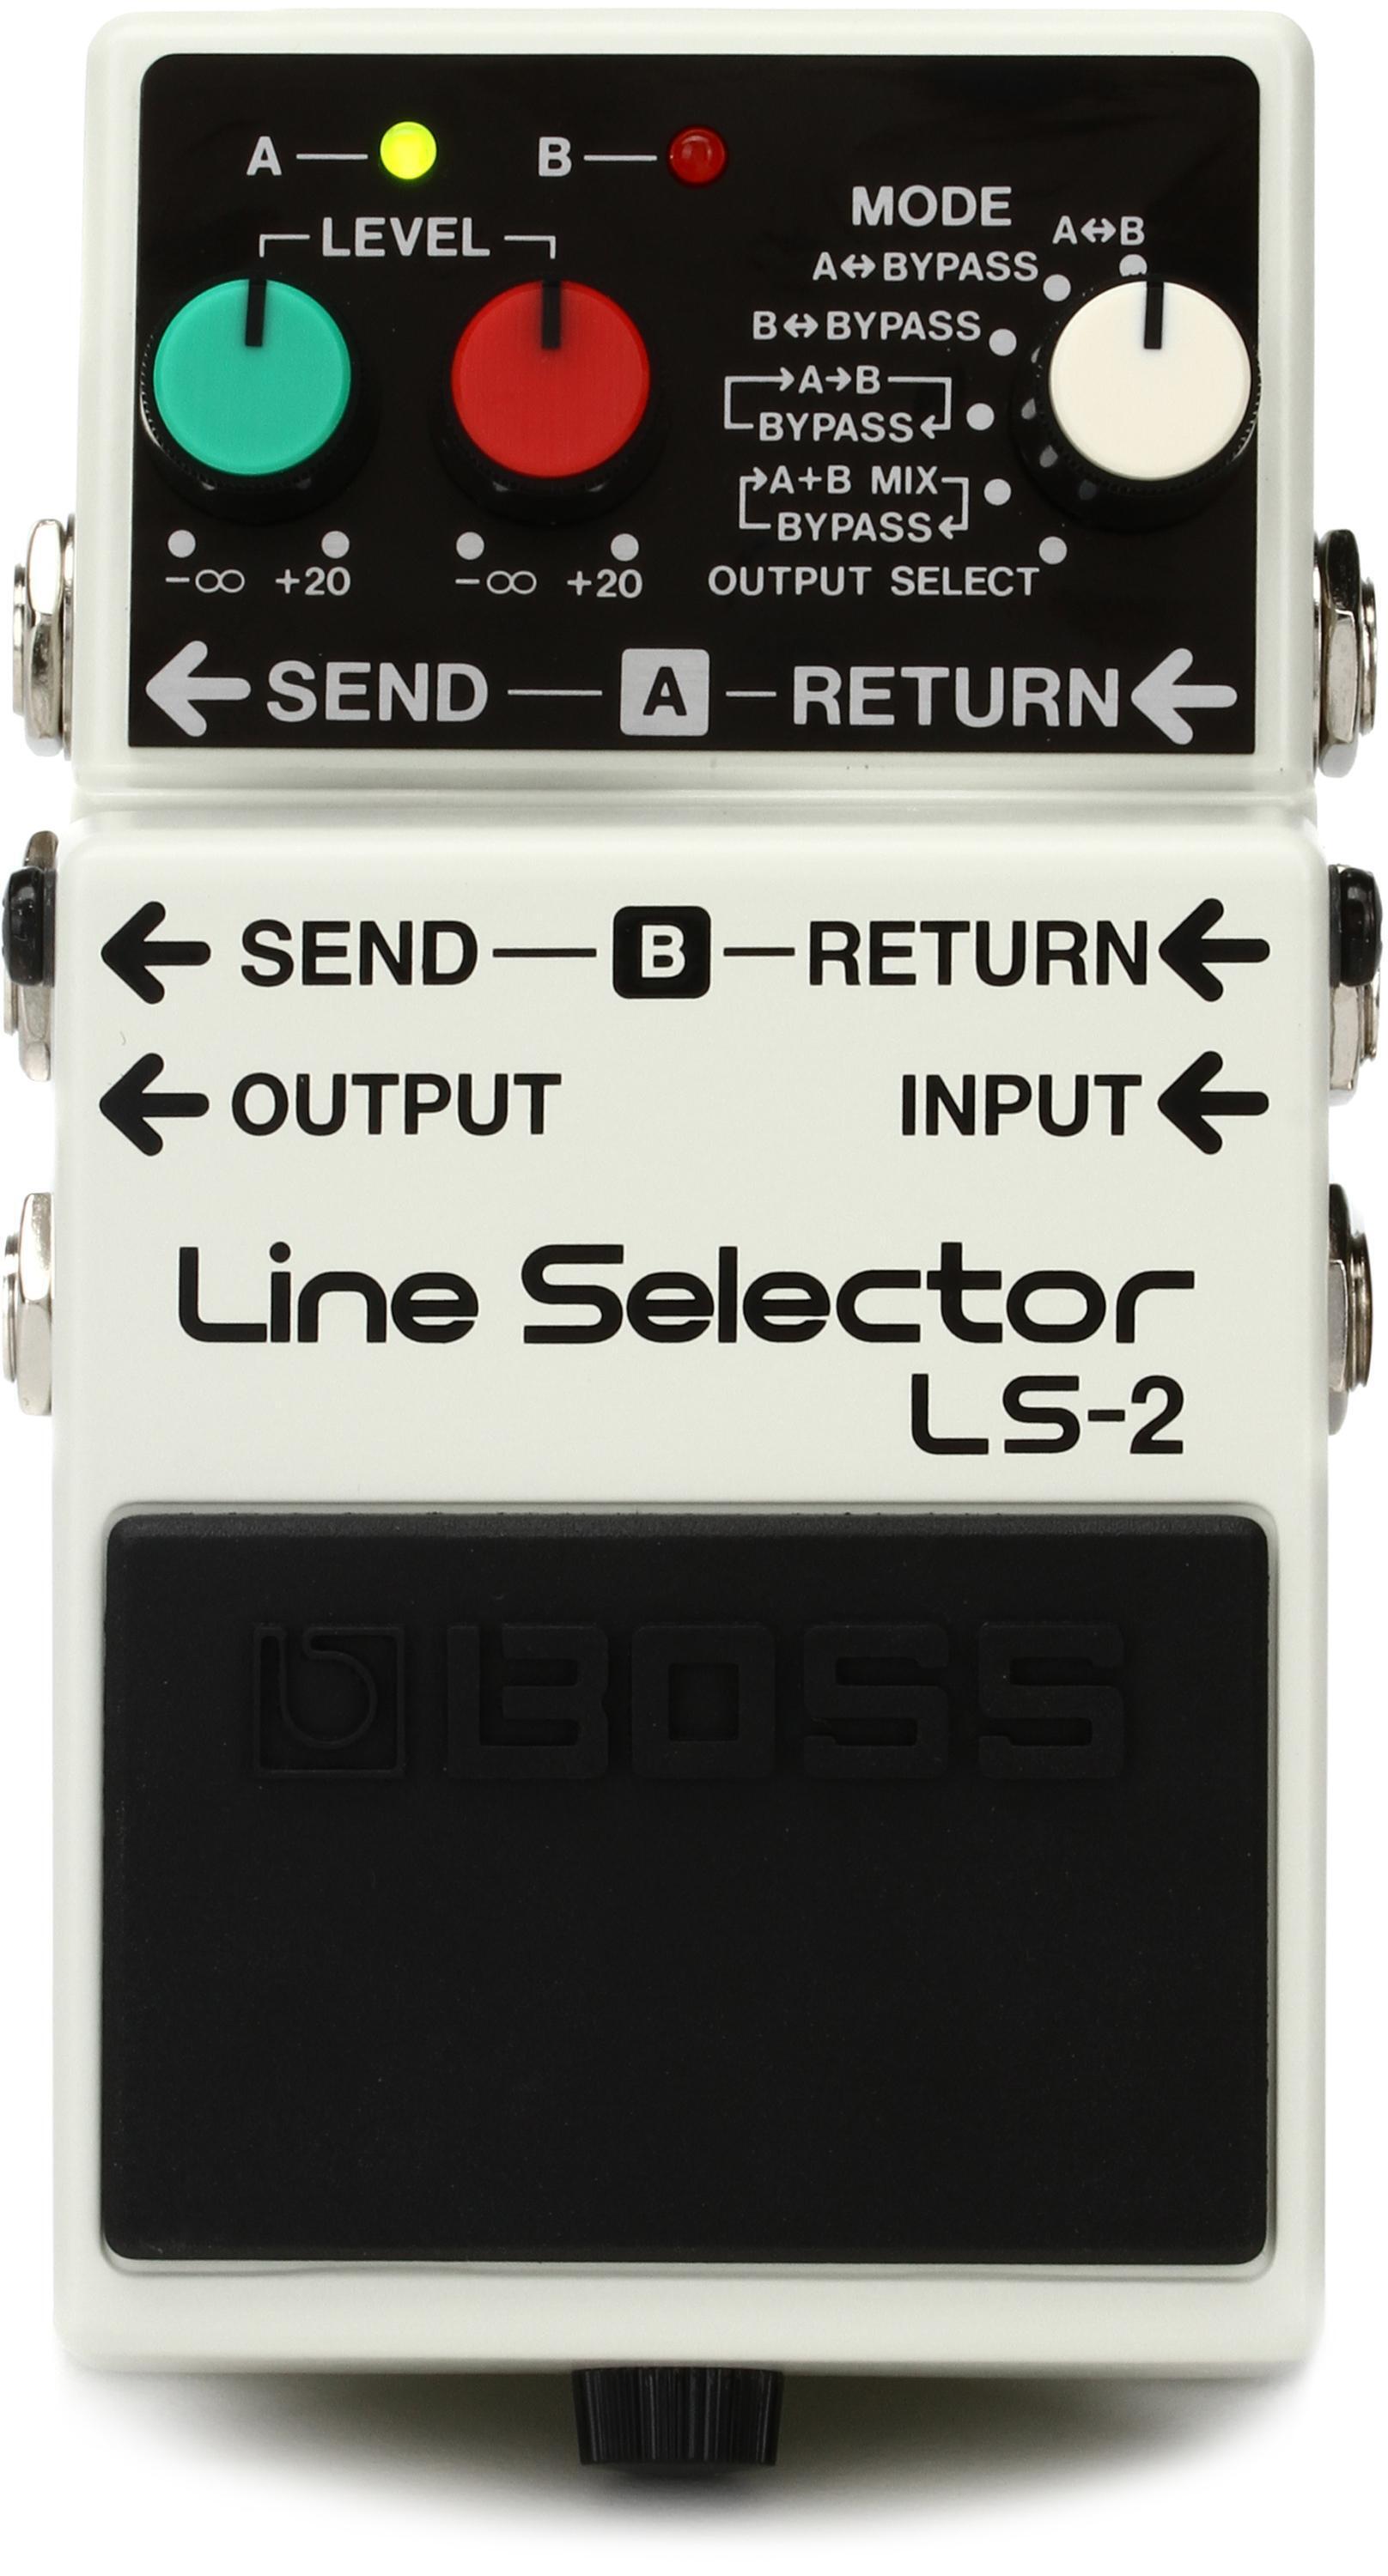 LS-2 (Line Selector)